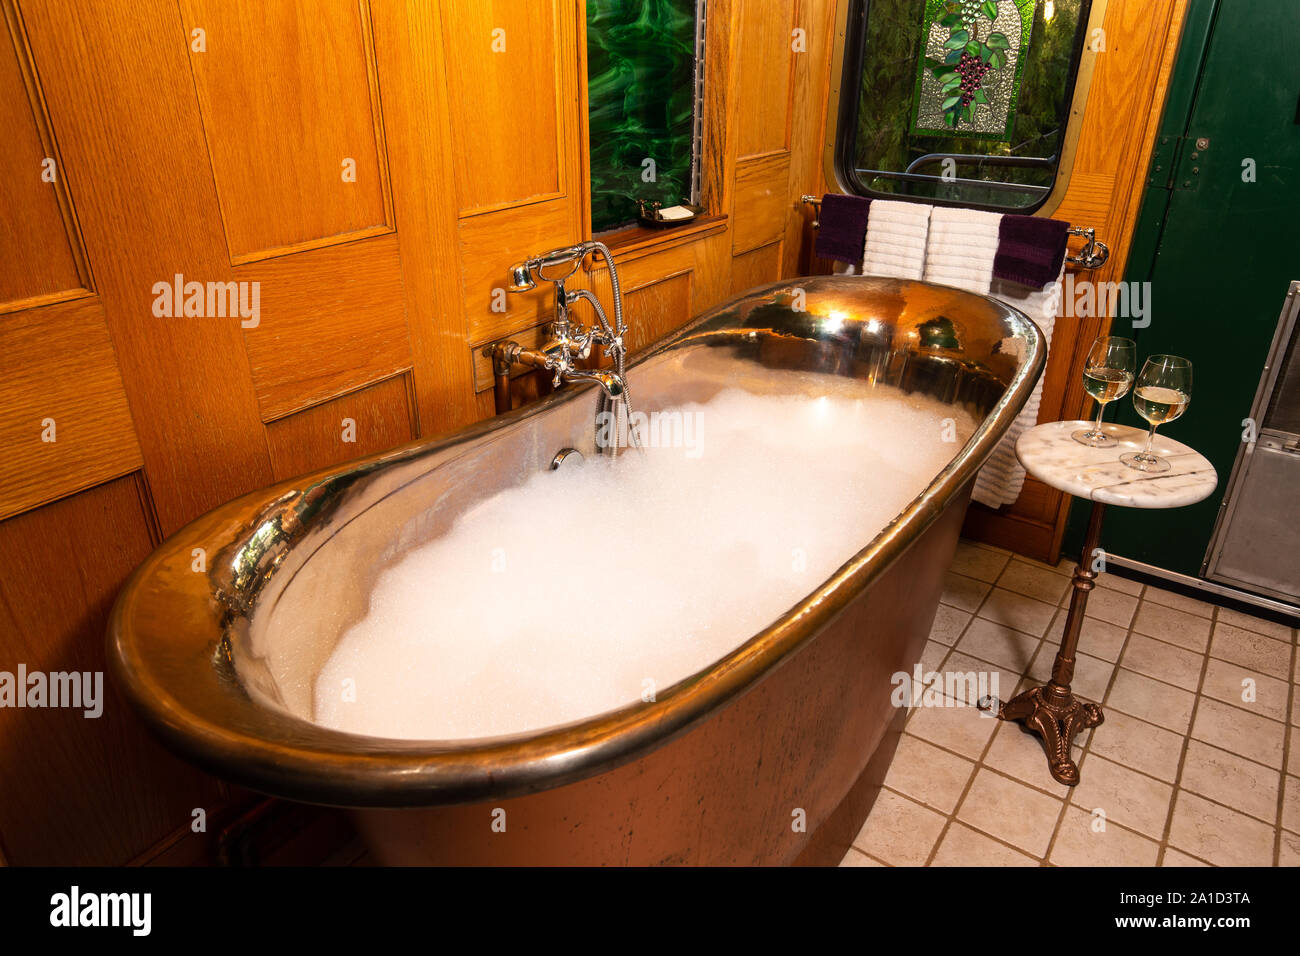 Verres de champagne et bain à remous baignoire bulle cuivre vintage Banque D'Images